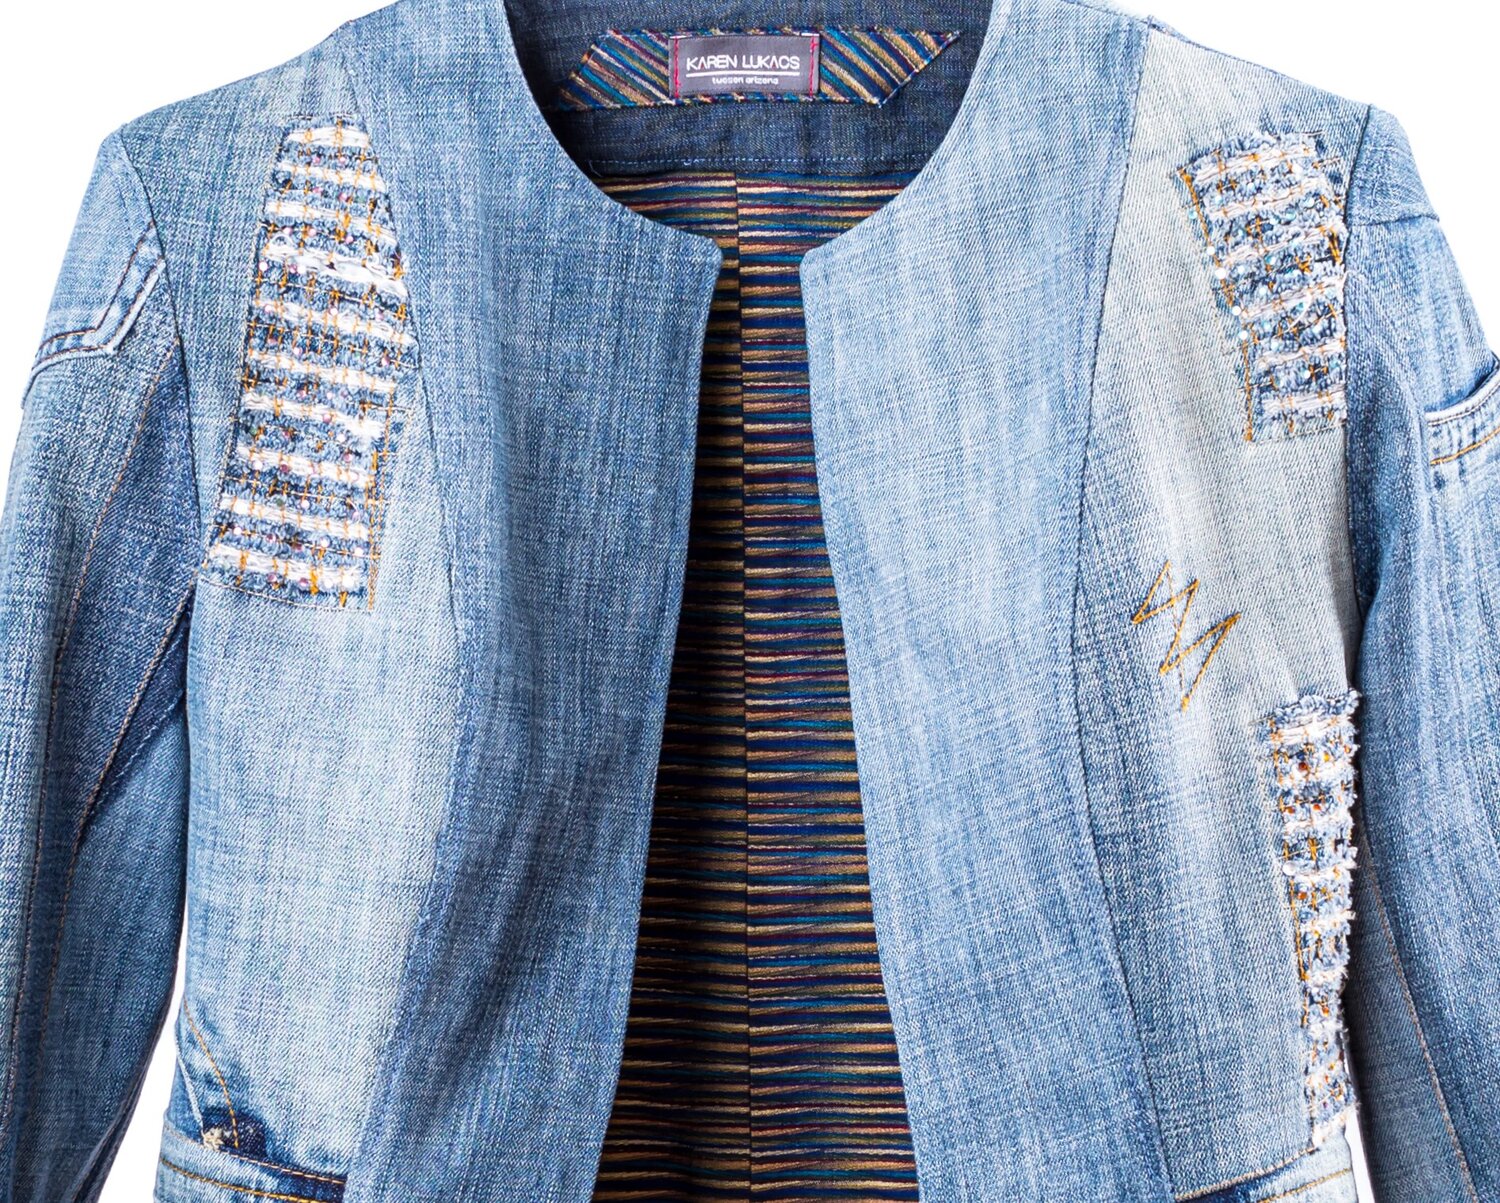 Upcycled denim chanel style jacket — Karen Lukacs Studio